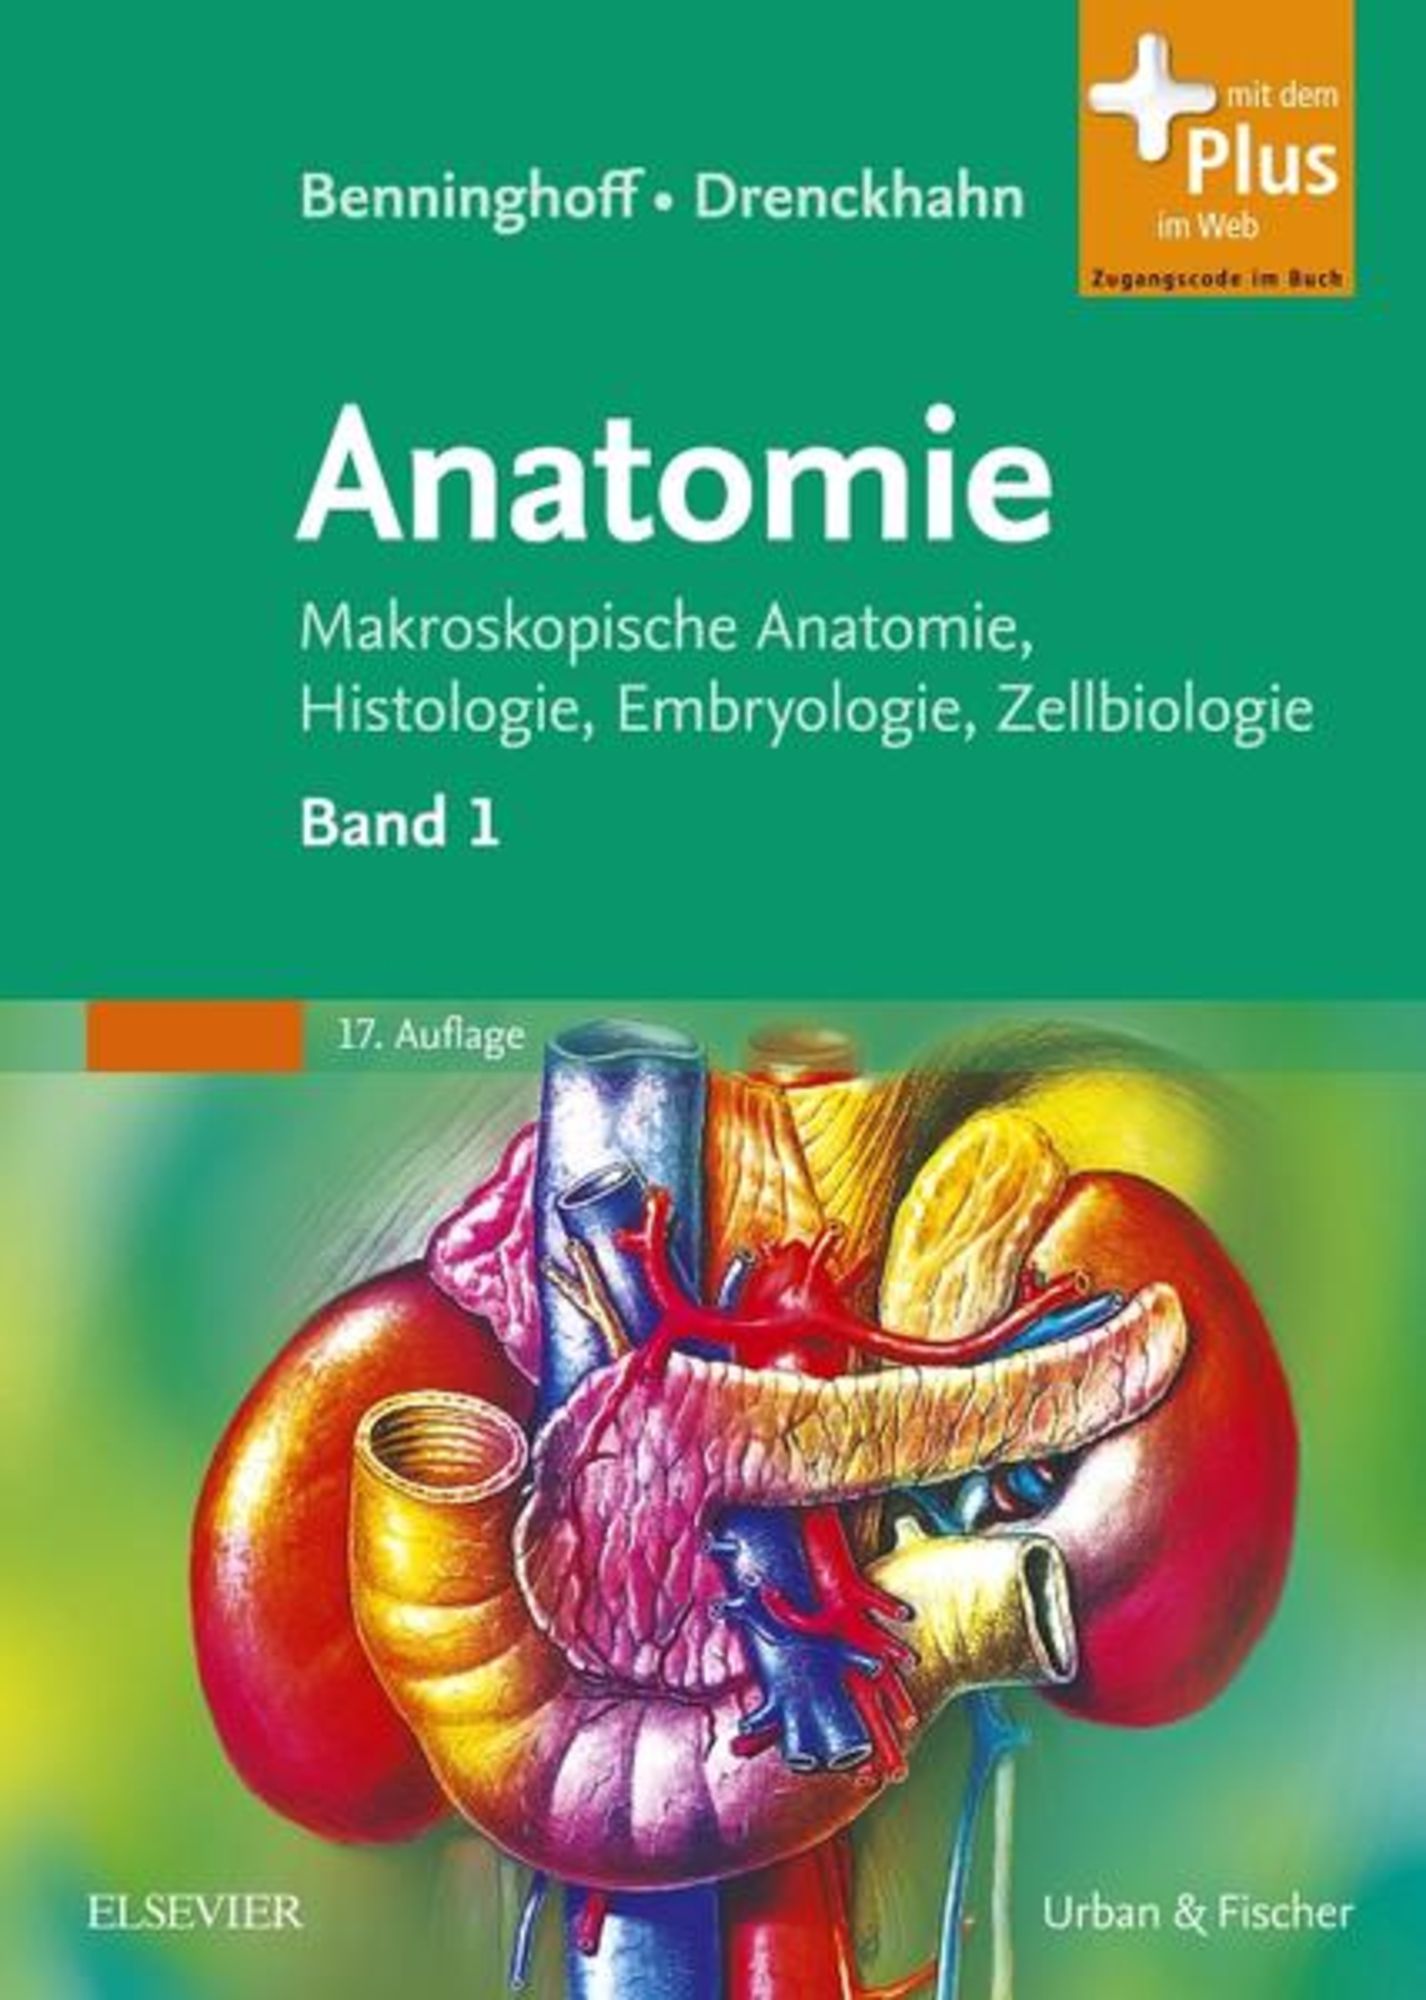 \'978-3-437-42342-0\' Benninghoff, - \'Alfred - Drenckhahn, von Benninghoff\' Anatomie\' Buch